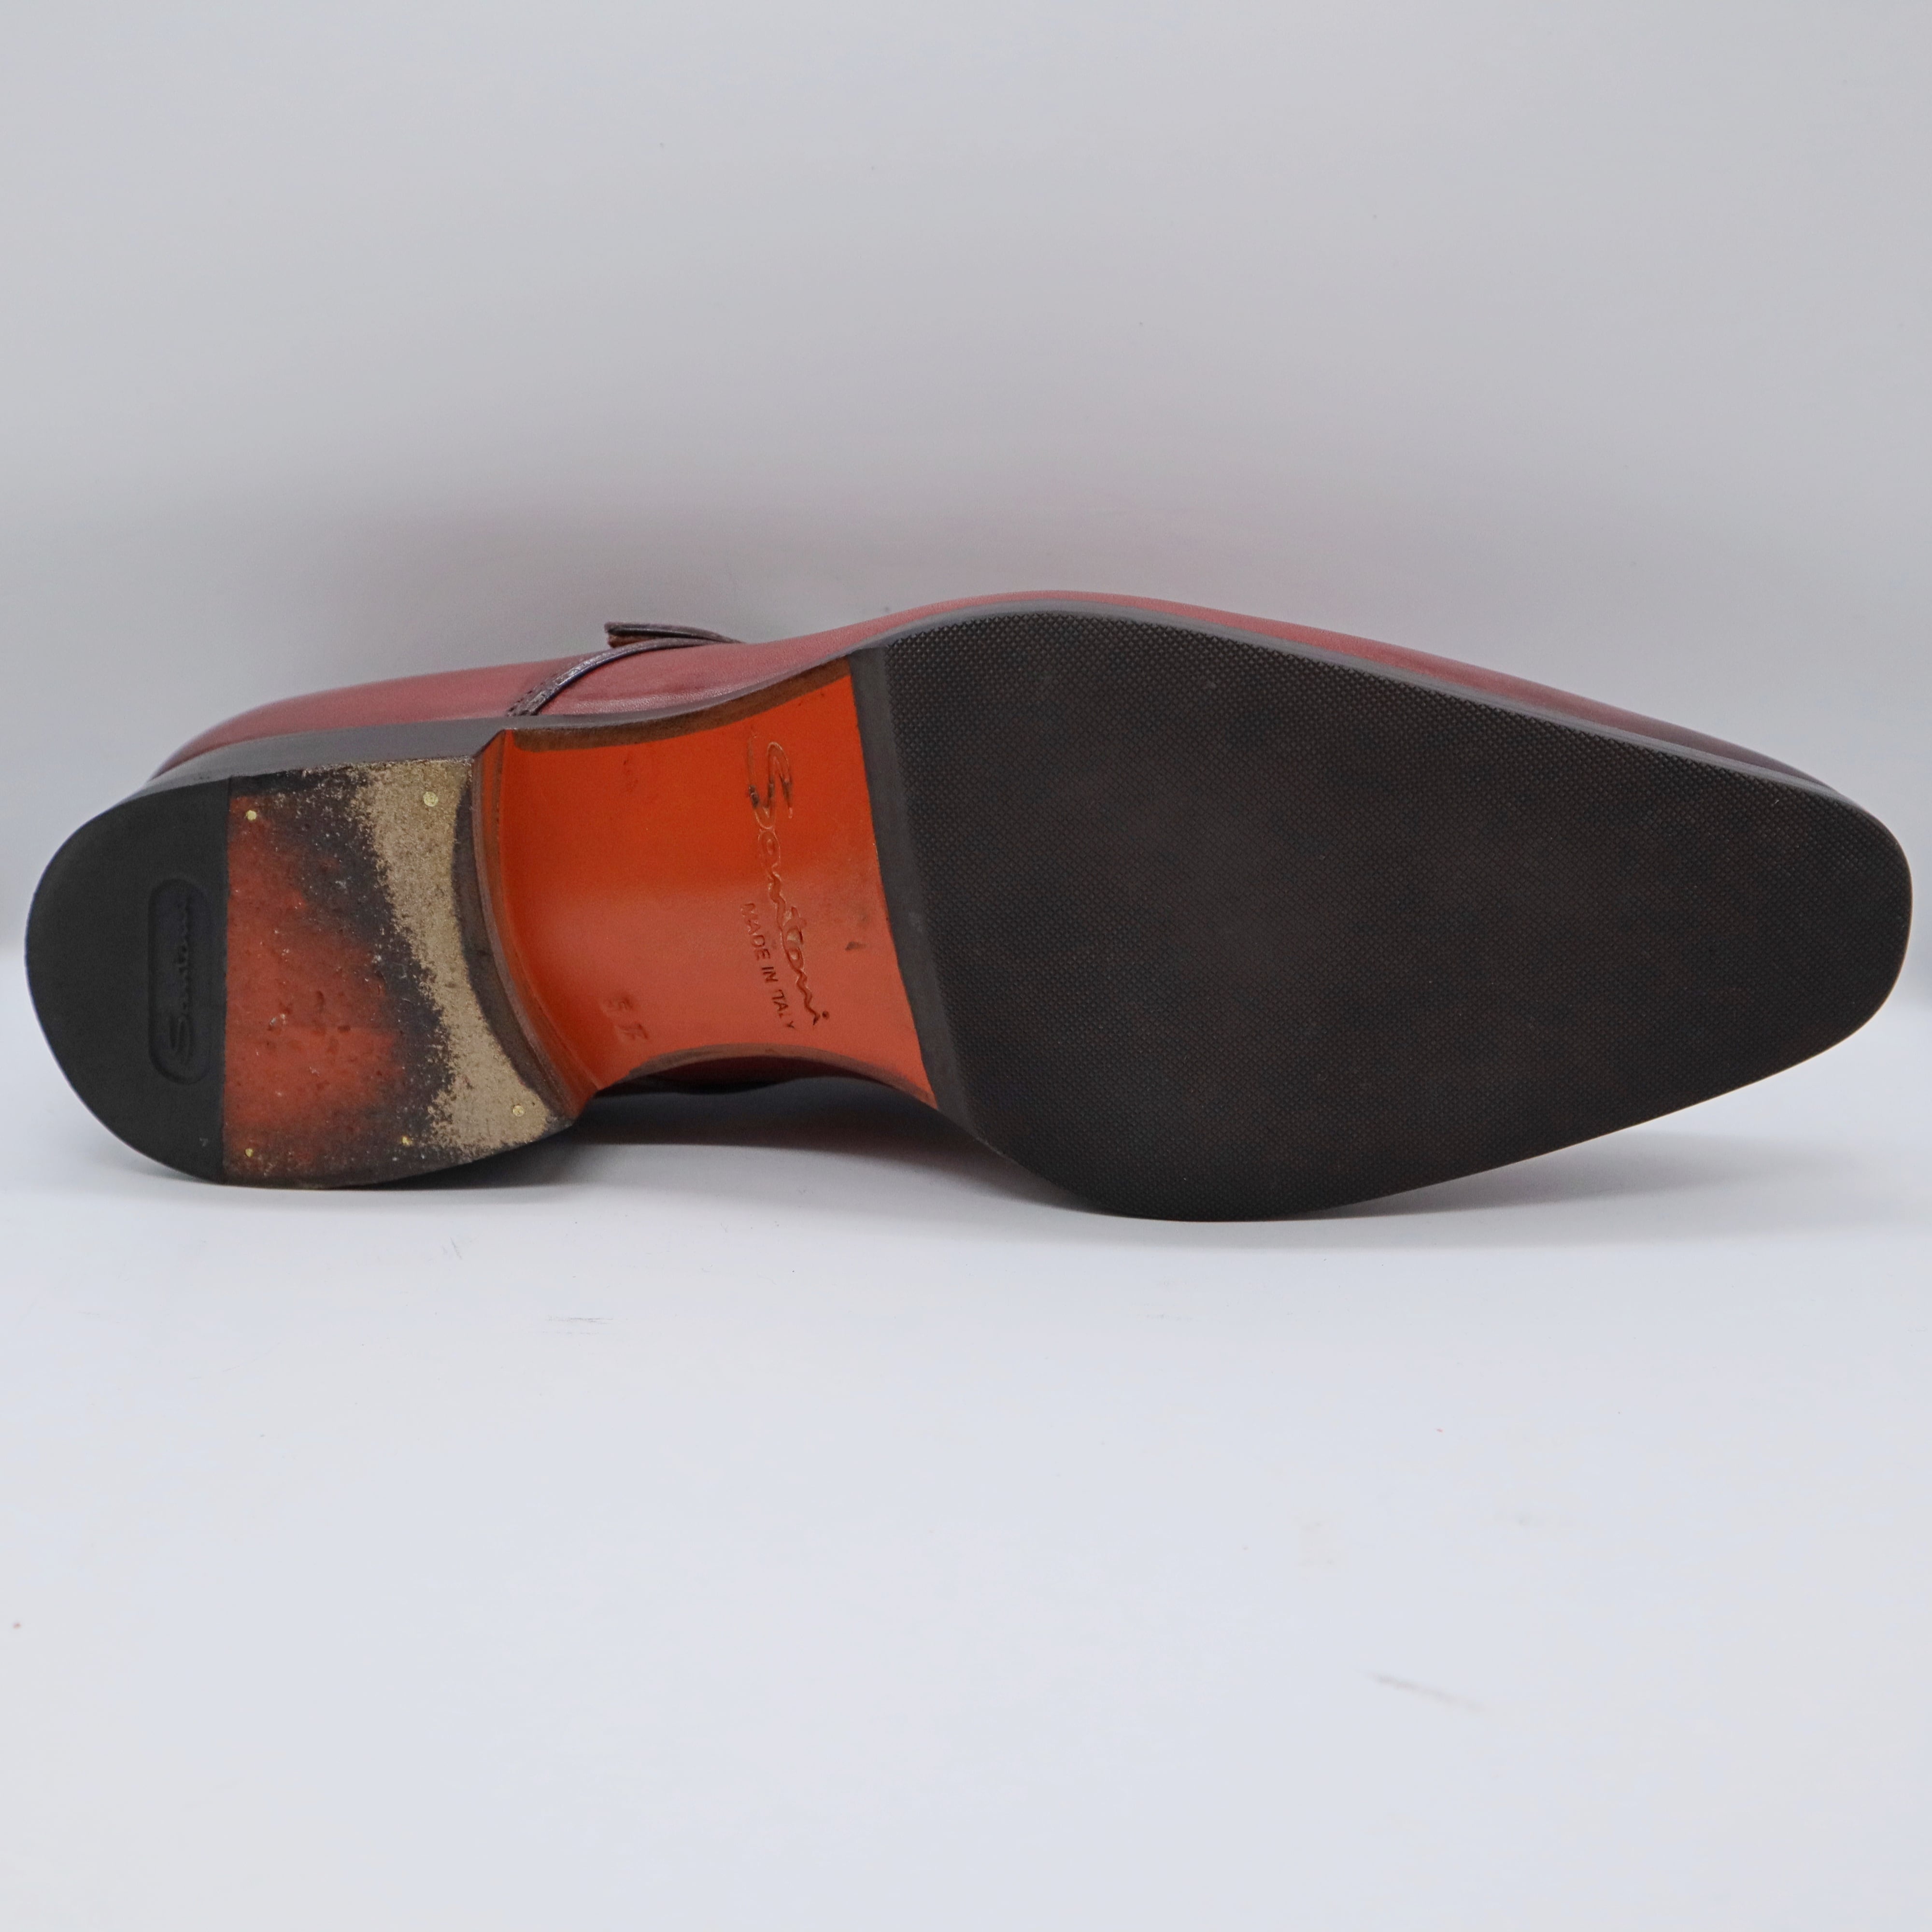 サントーニ / Santoni / 99581 / シングルモンクストラップ / 中古革靴